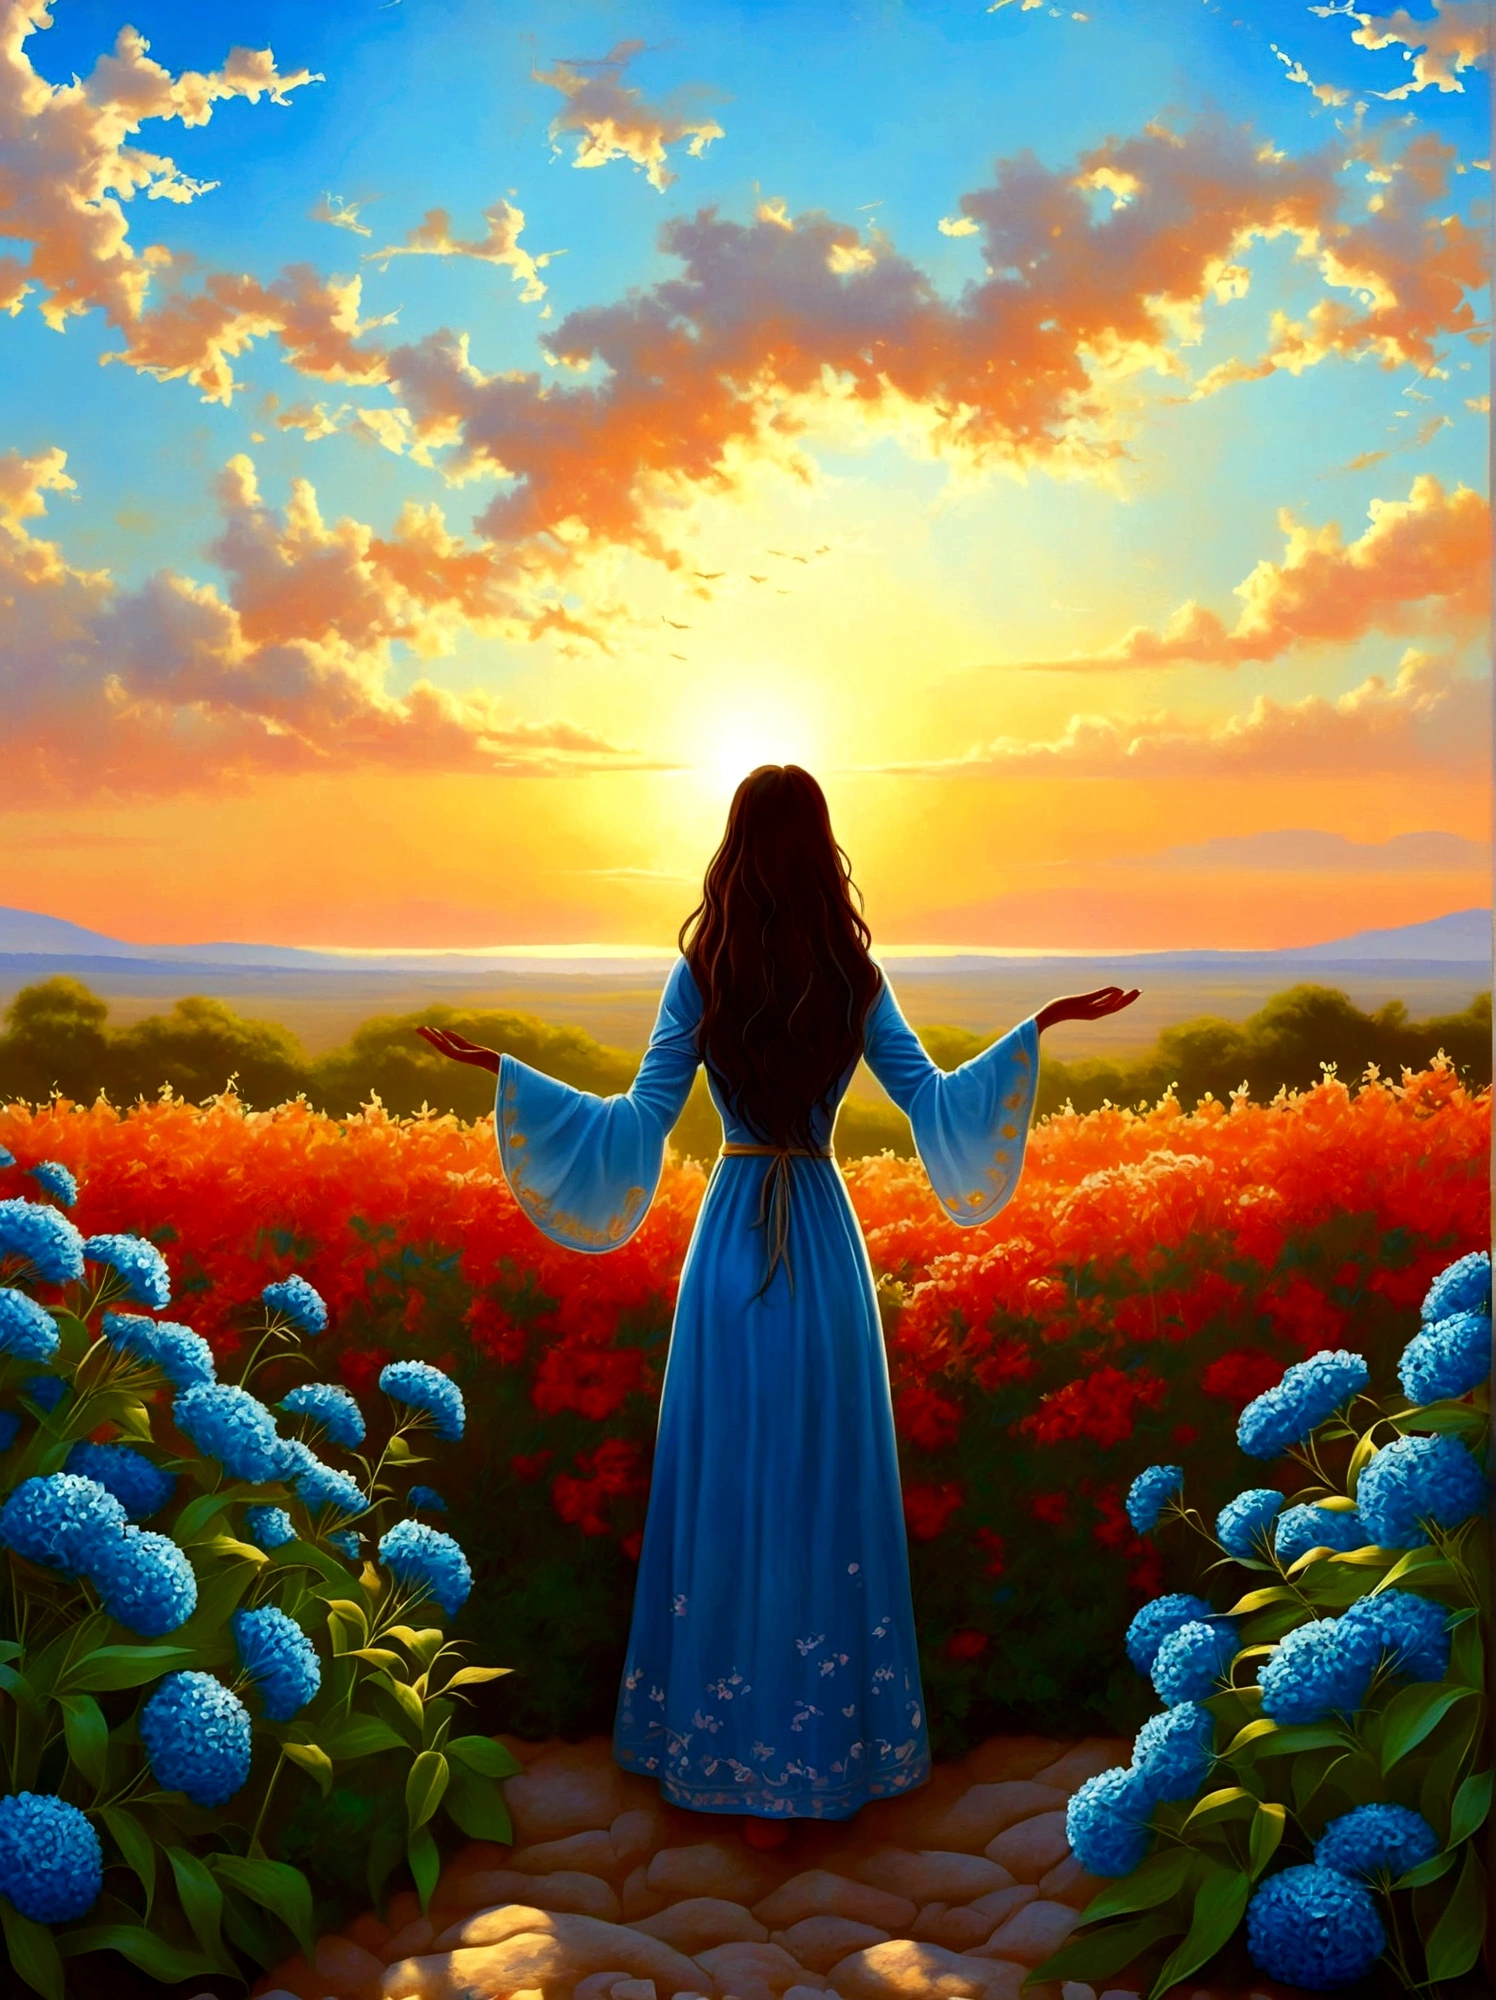 (夜明けの日の出時刻:1.6)，香り豊かな庭園で, 盲目の少女はそこに立っていた，腕を広げて, 出会った花びらに優しく触れる, 自然と愛らしい青い花とのつながり, 広大な空の下で、畏敬の念と驚きをもって堂々と立っている人物, 彼らのシルエットは鮮やかな色の朝の光と対照的である, 彼らは深い思索の境地にある, 周囲の穏やかな雰囲気は静寂と孤独を物語っている, 視点は広角ビューで、自然の要素に満ちた息を呑むような風景の広大な範囲を強調しています。, 画像は光と影を効果的に使用してドラマチックさと壮大さを感じさせるものでなければならない。.